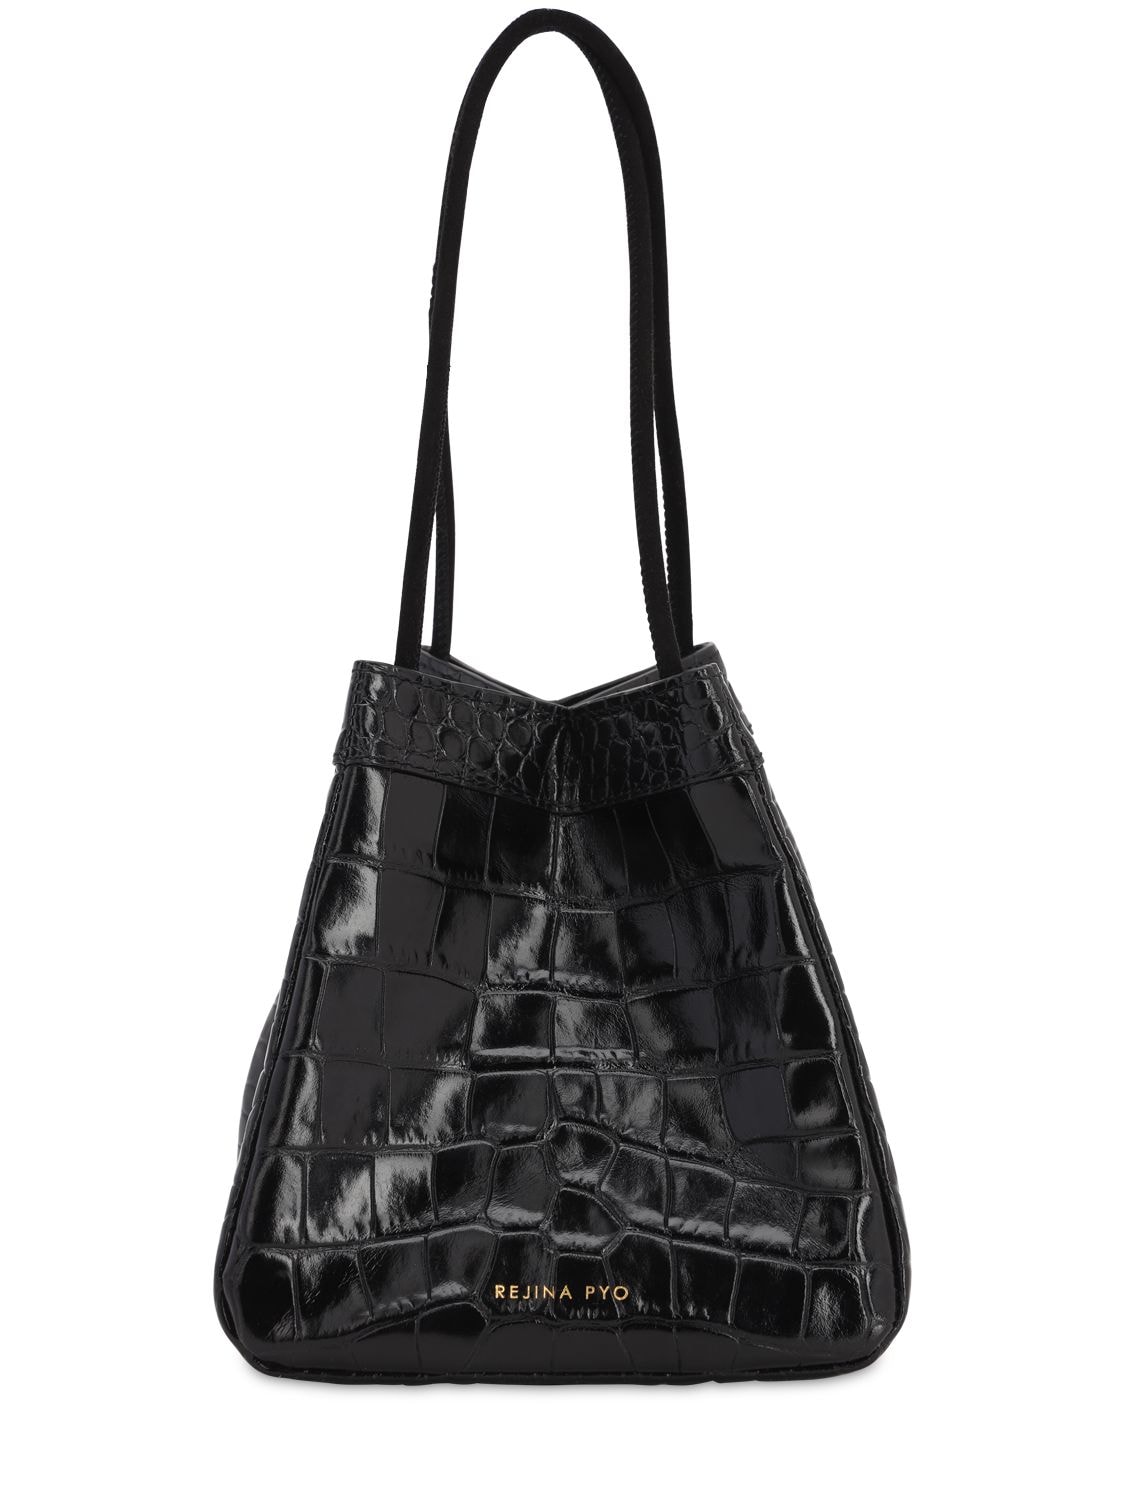 Rejina Pyo Rita Croc Embossed Leather Bag In Black